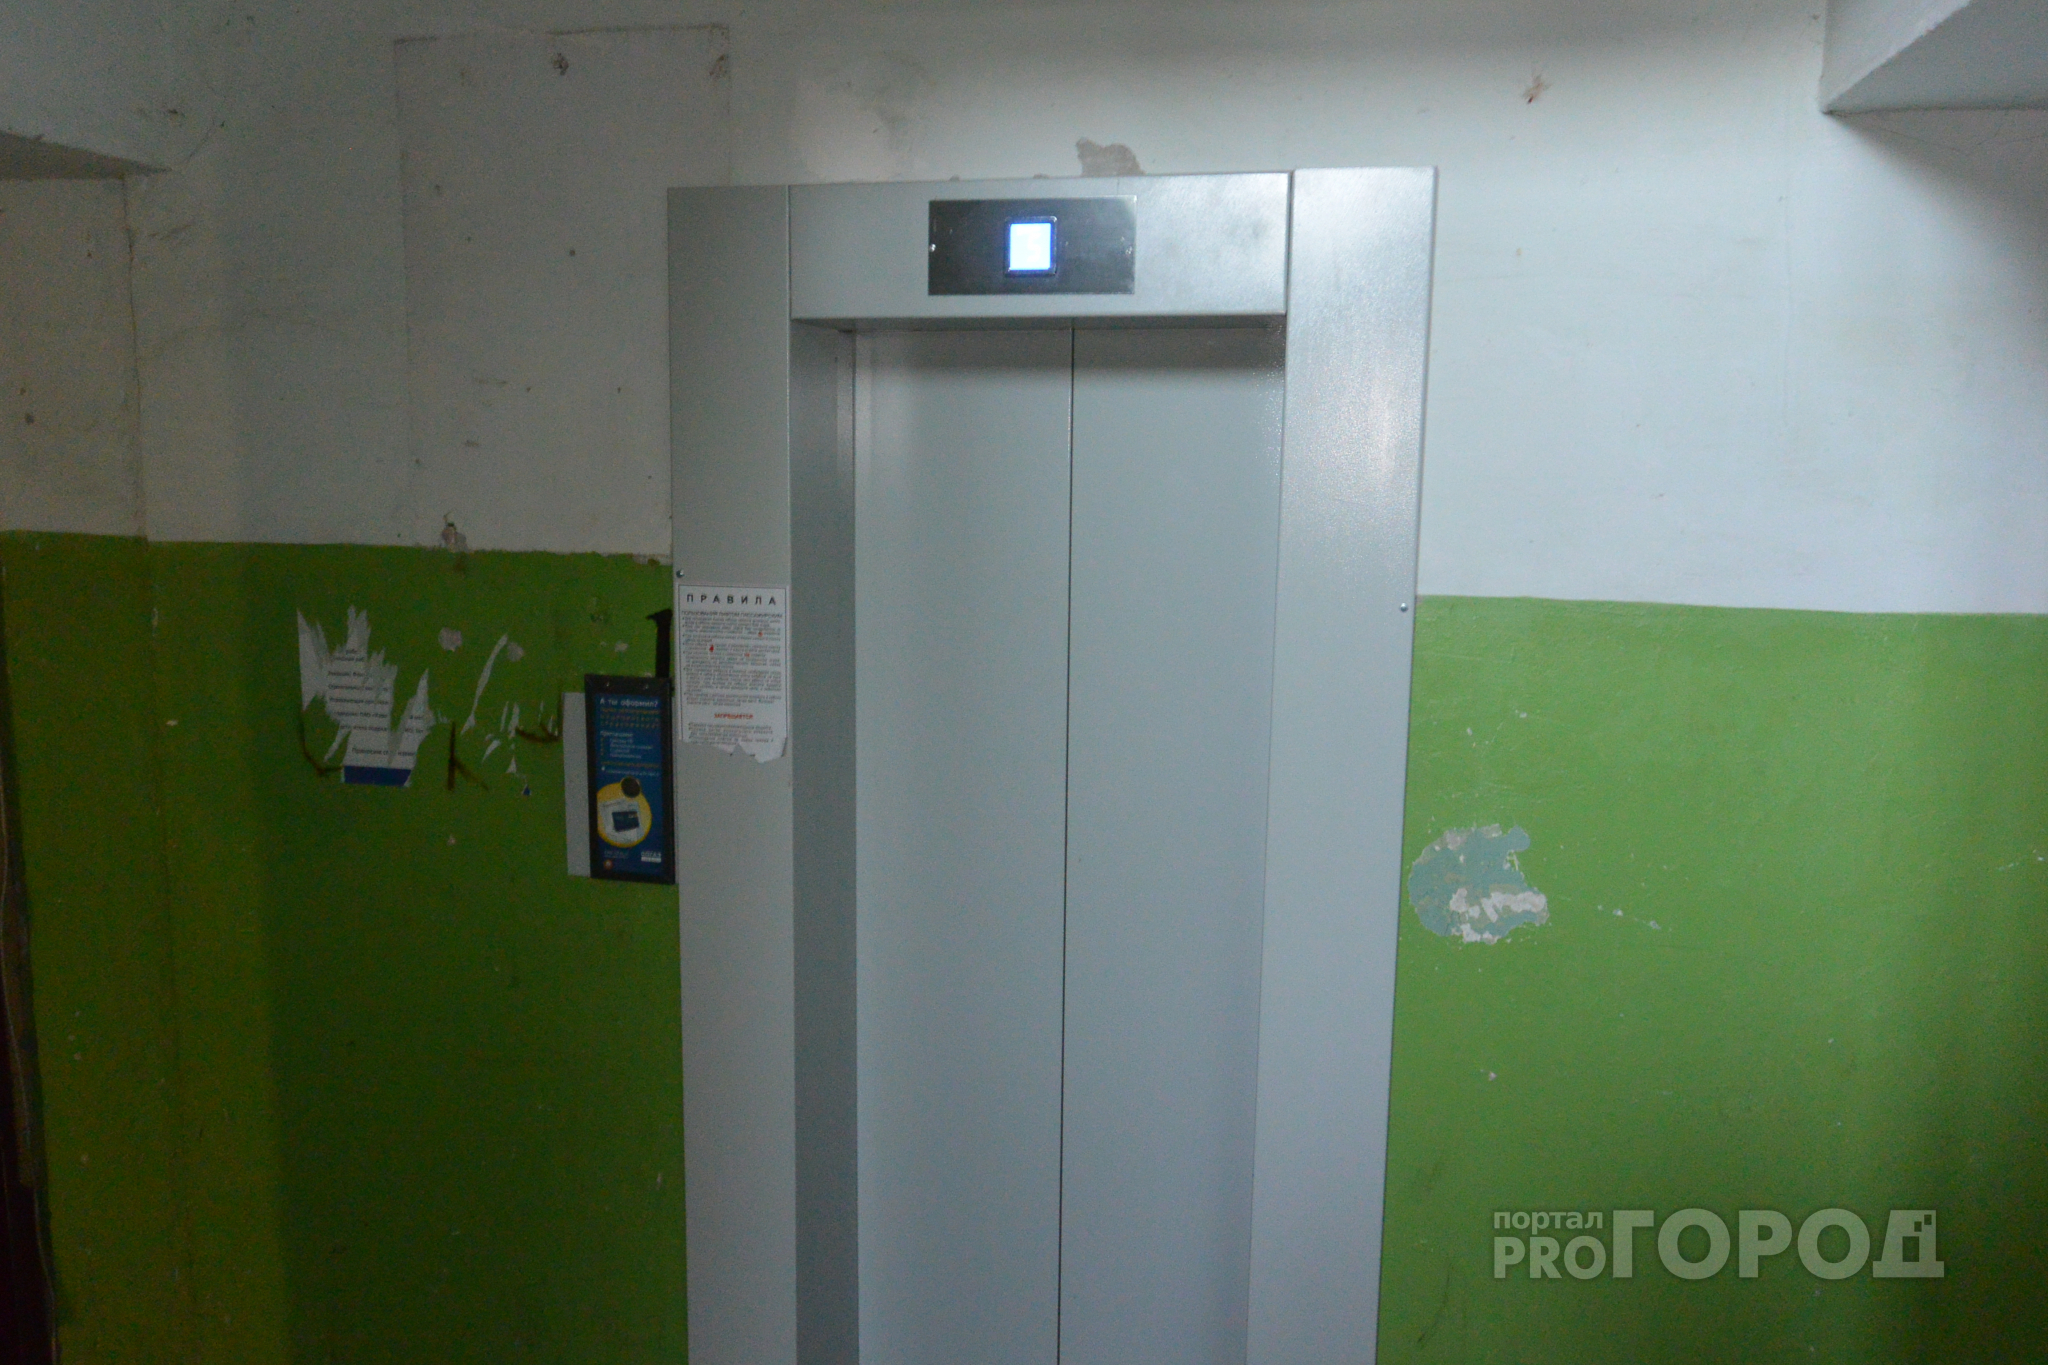 Рязанцы жалуются на работу лифта в жилом доме на улице Новаторов